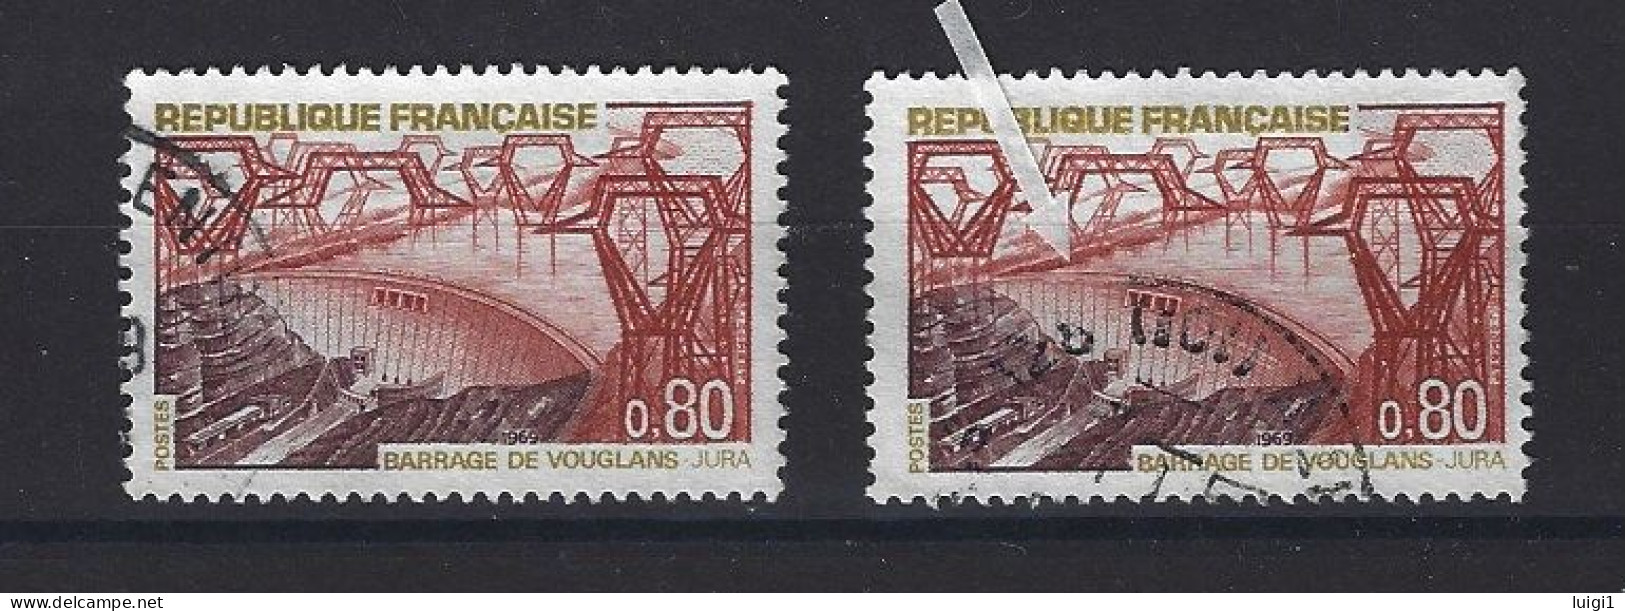 FRANCE 1969 - Y&T N°1583 + N°1583b . 80 C. Barrage De Vouglans. - Variété : Normal + Barrage Rompu. Oblitérés. TB - Used Stamps